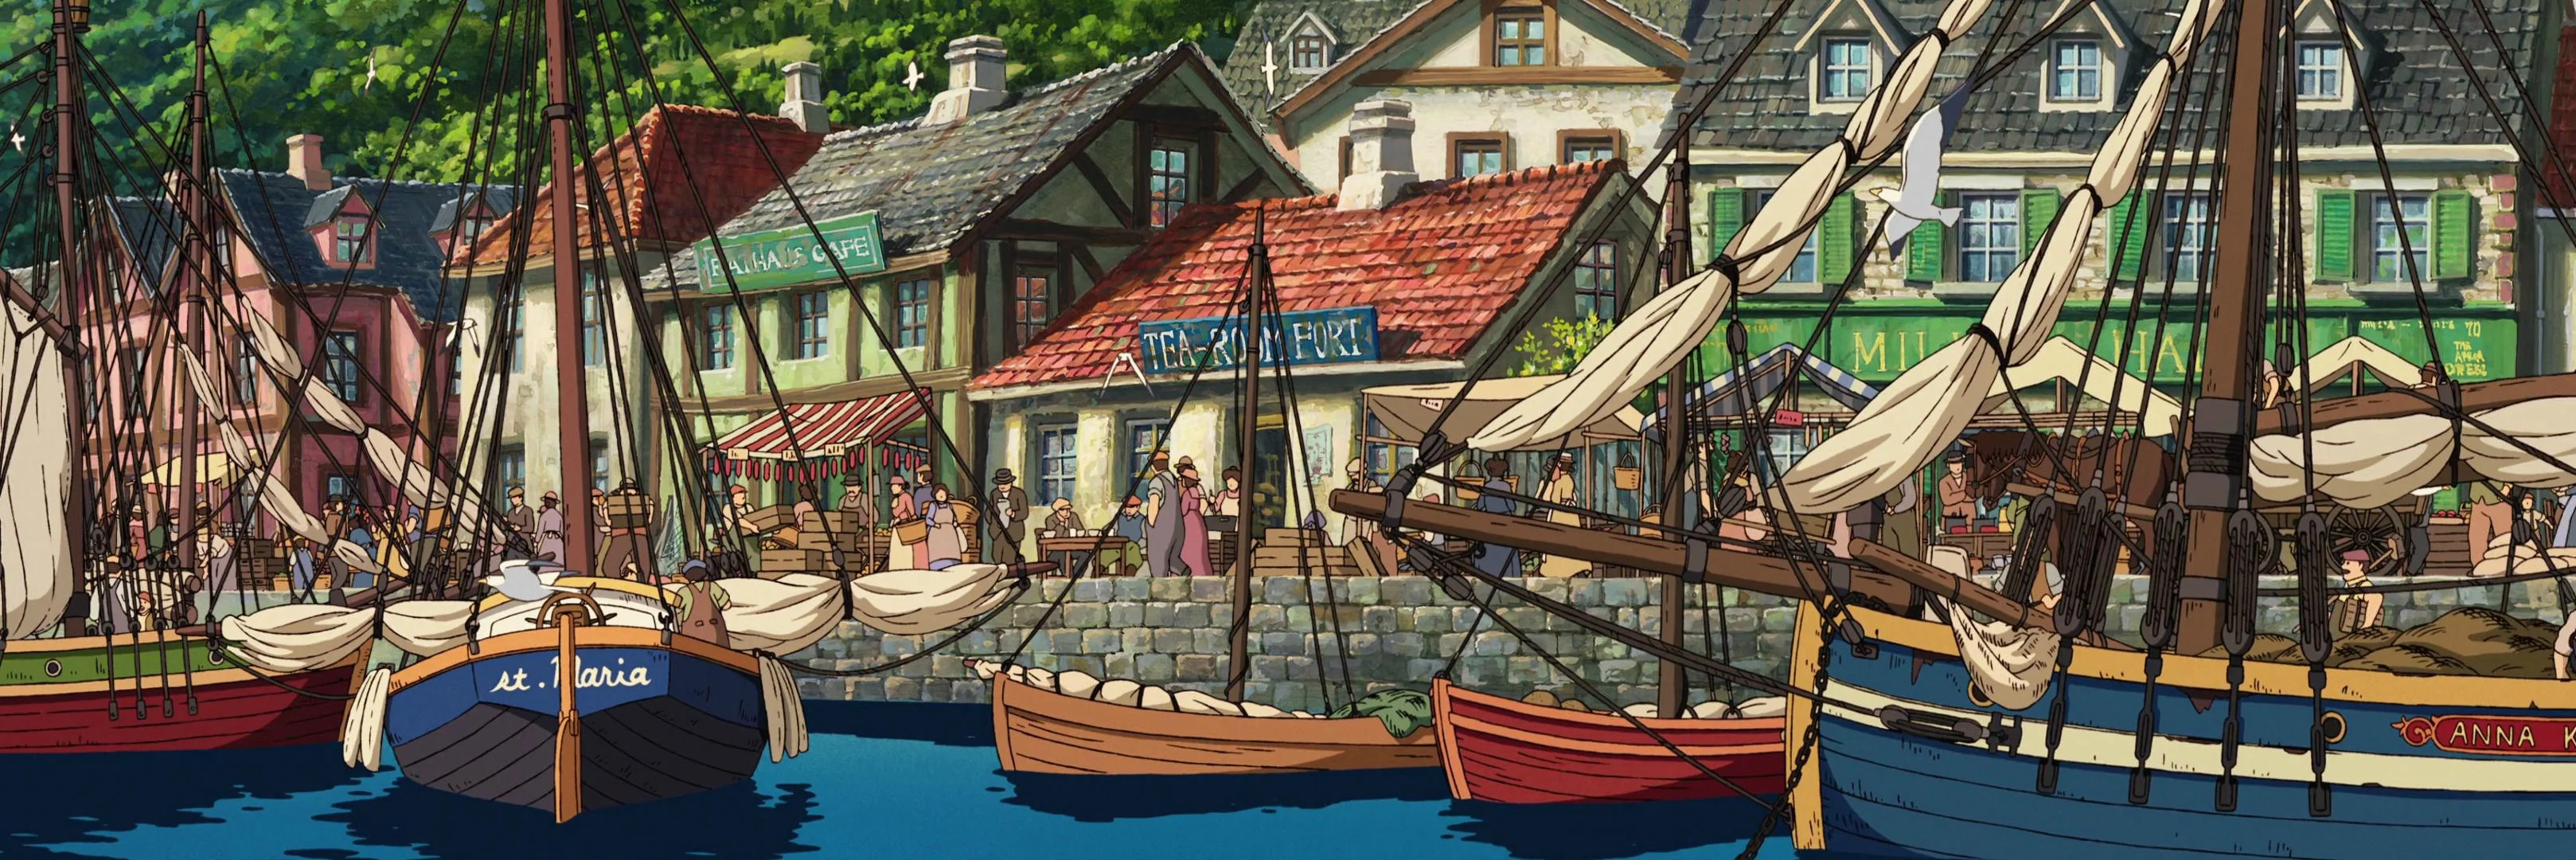 Cute Studio Ghibli Background